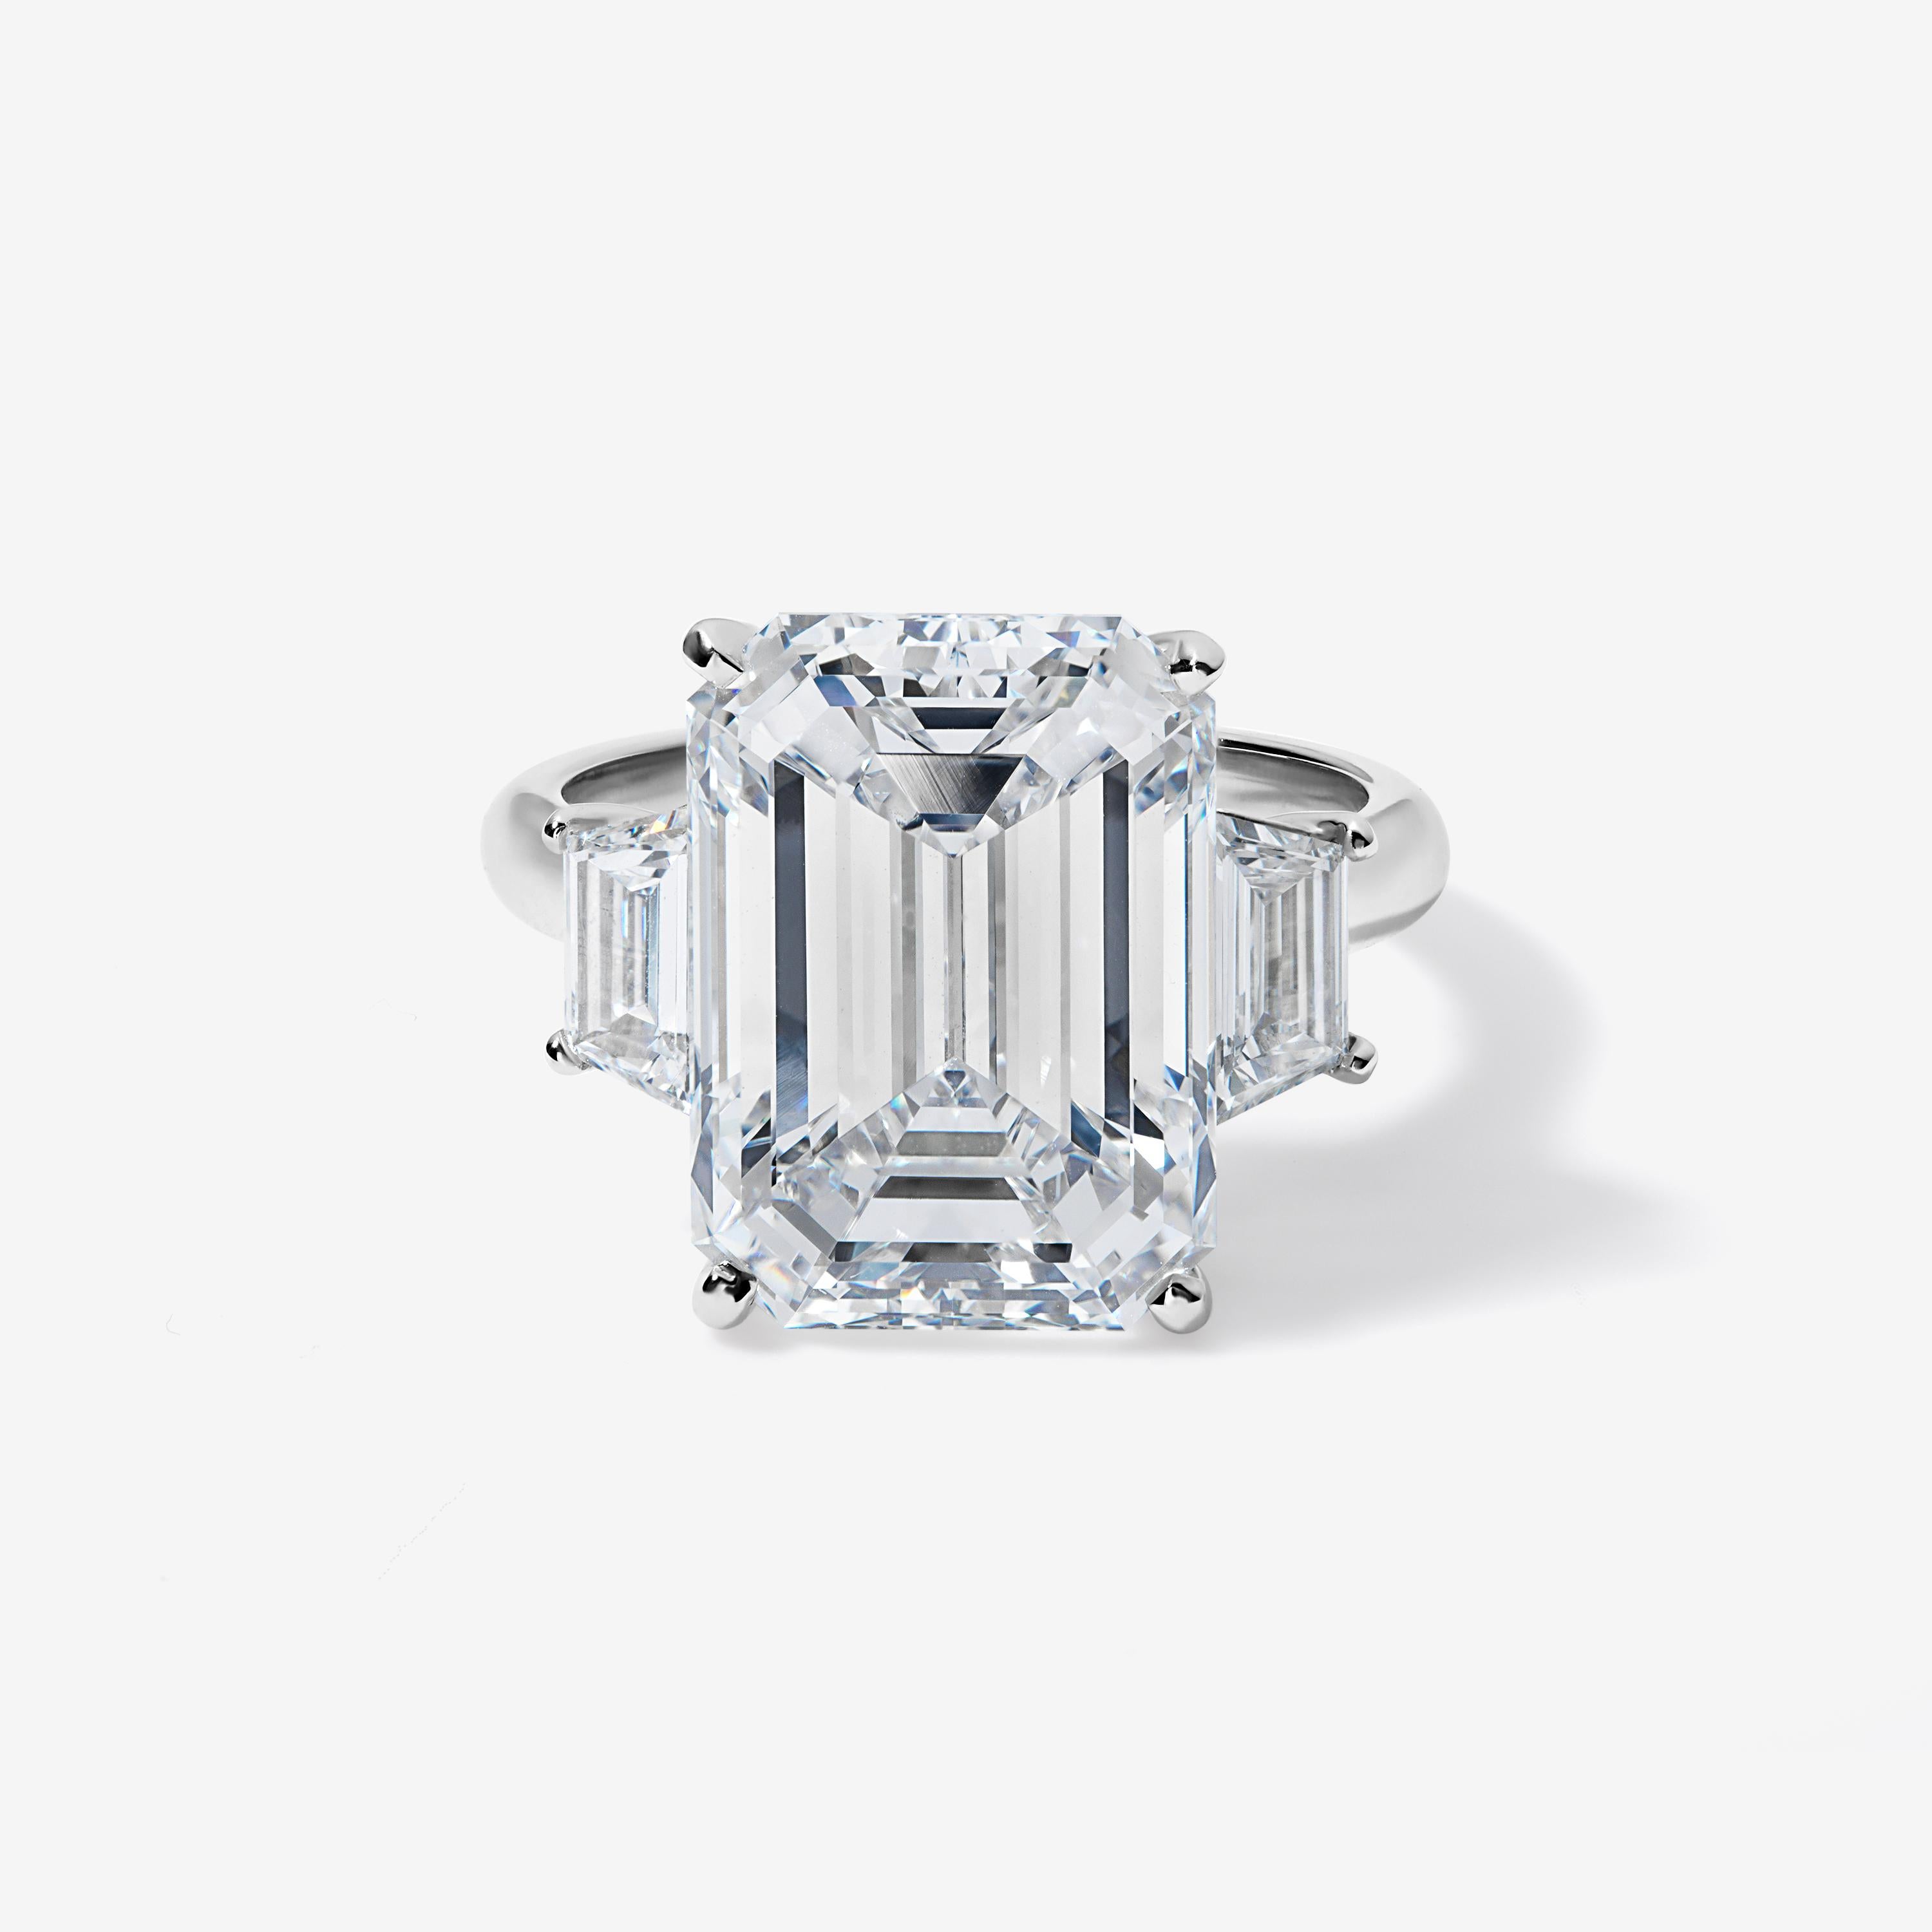 Dieser Ring aus Platin mit drei Steinen ist ein echter Klassiker.

Der zentrale 10-Karat-Diamant im Smaragdschliff ist farblos und augenrein, mit einem idealen Verhältnis von 1,37 und ausgezeichneter Politur und Symmetrie. Er sitzt zwischen zwei